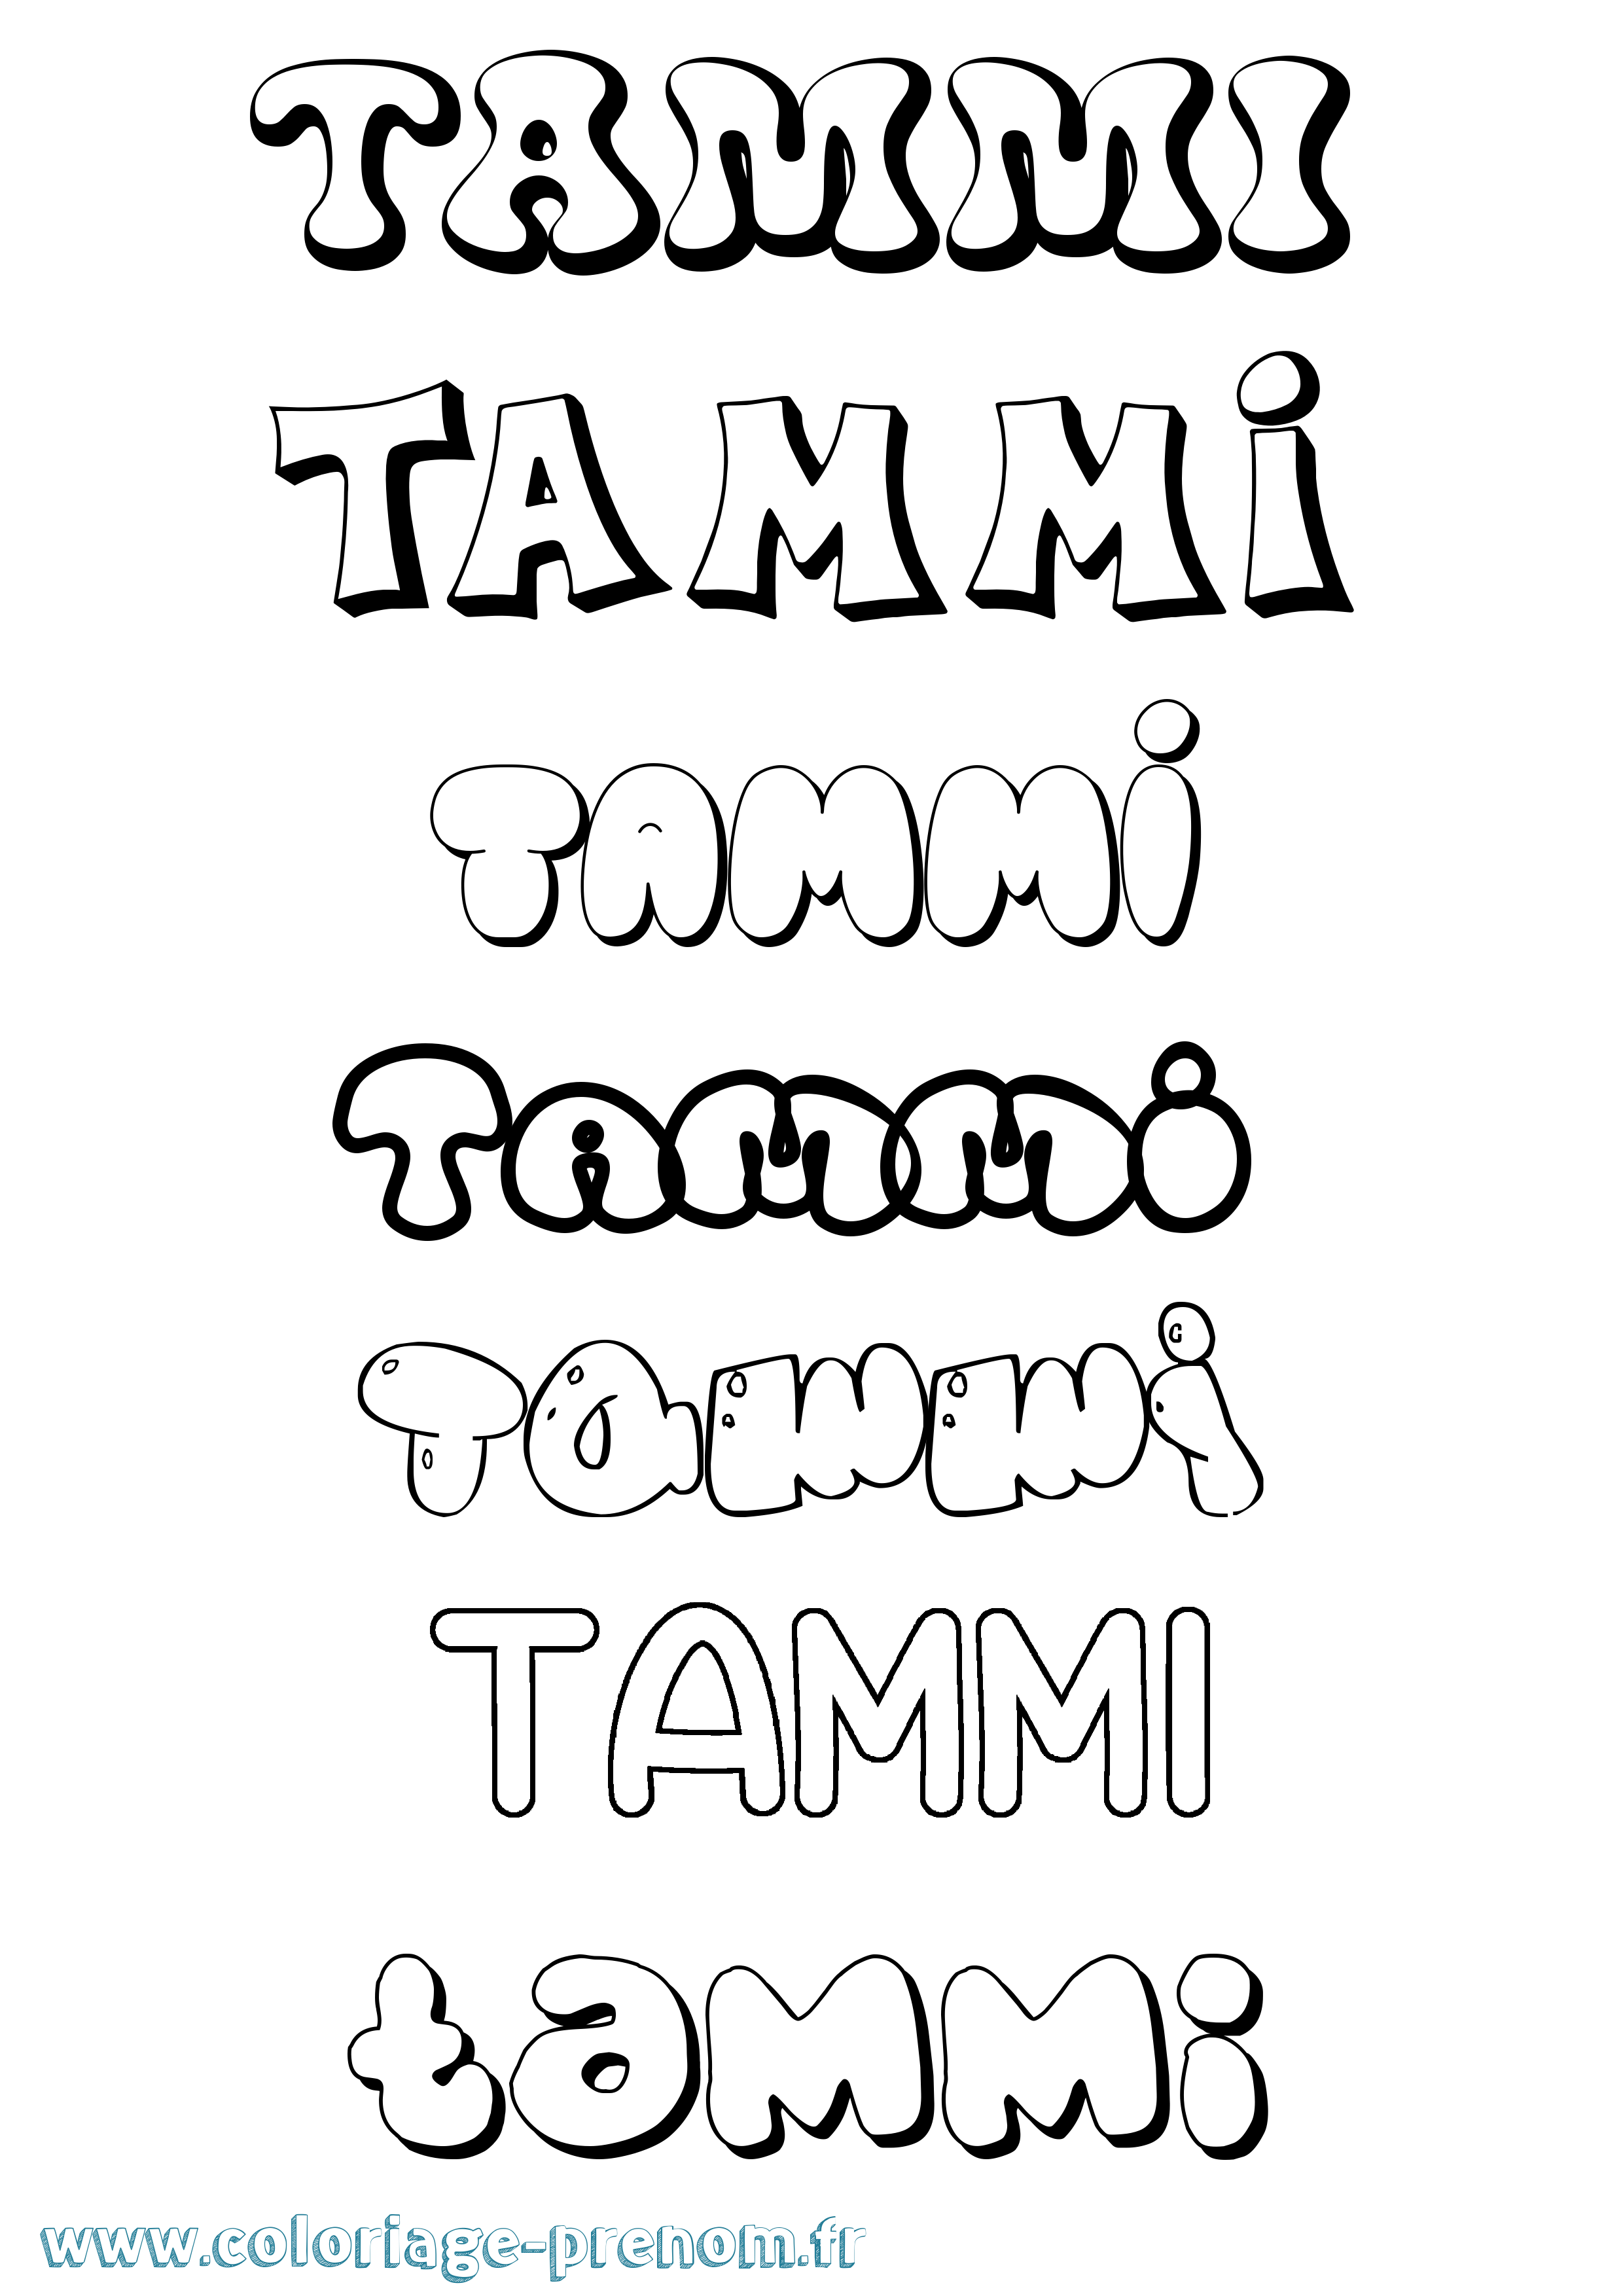 Coloriage prénom Tammi Bubble